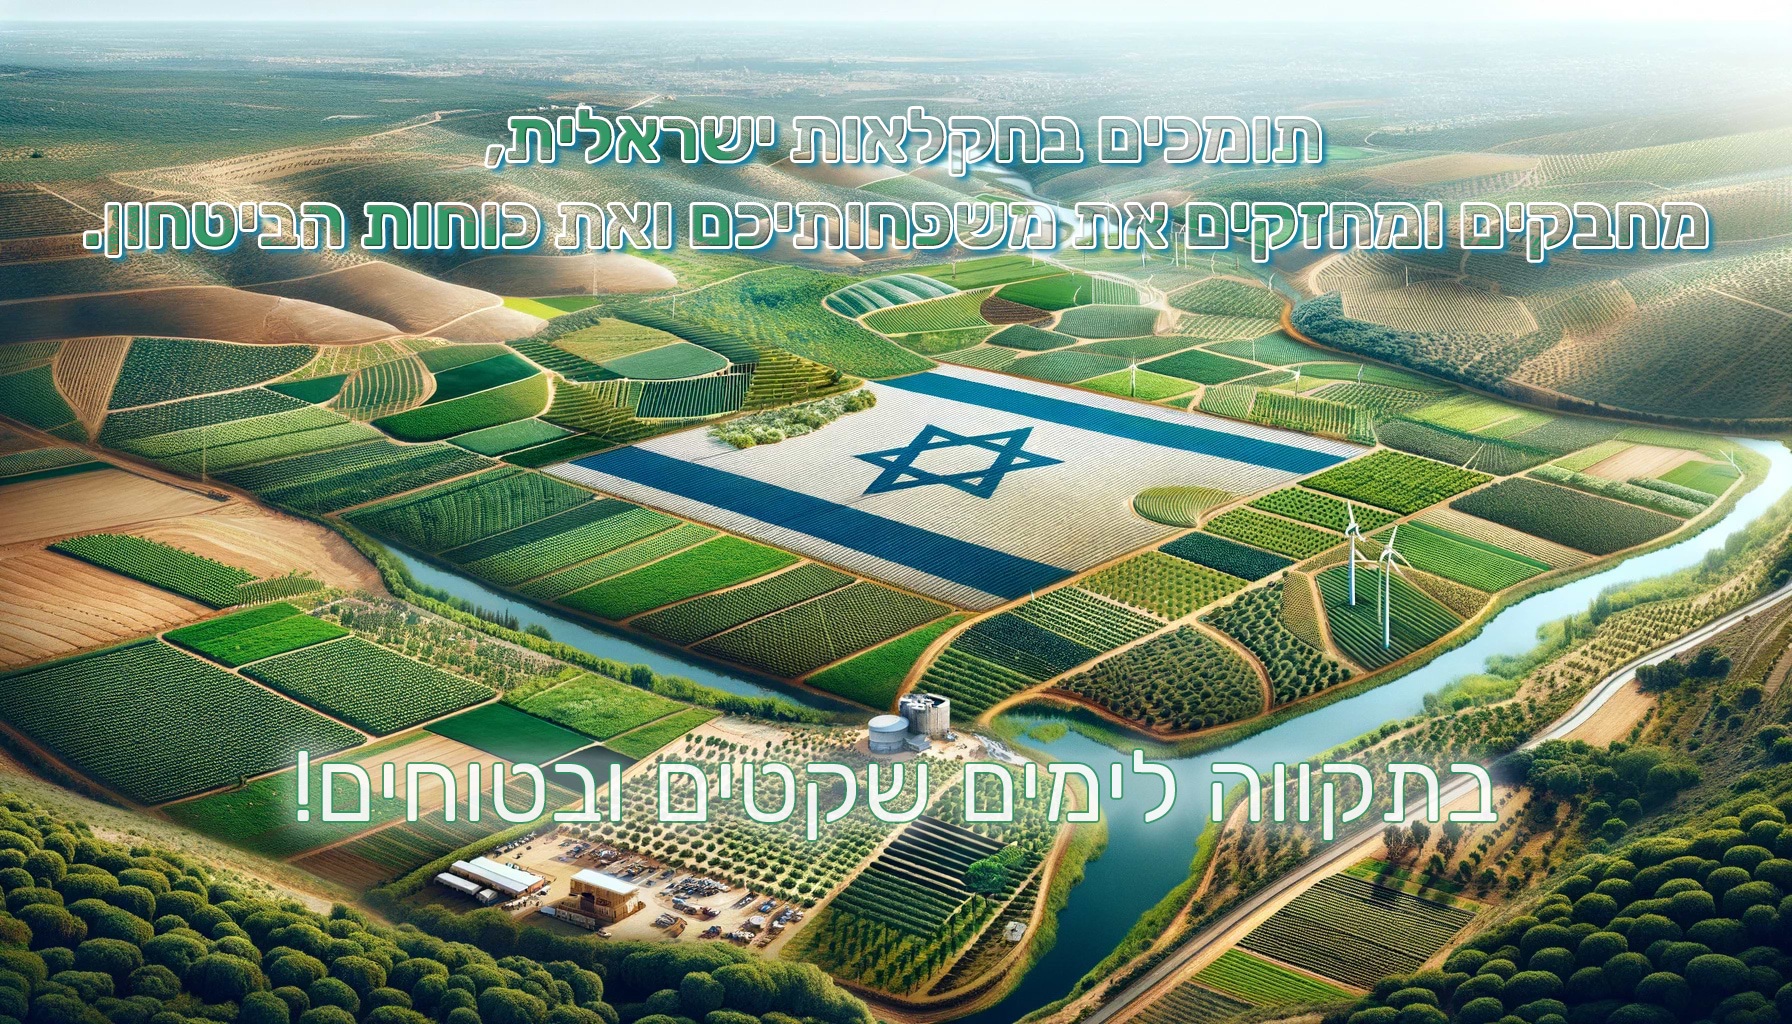 פרשוק - חקלאות ישראלית